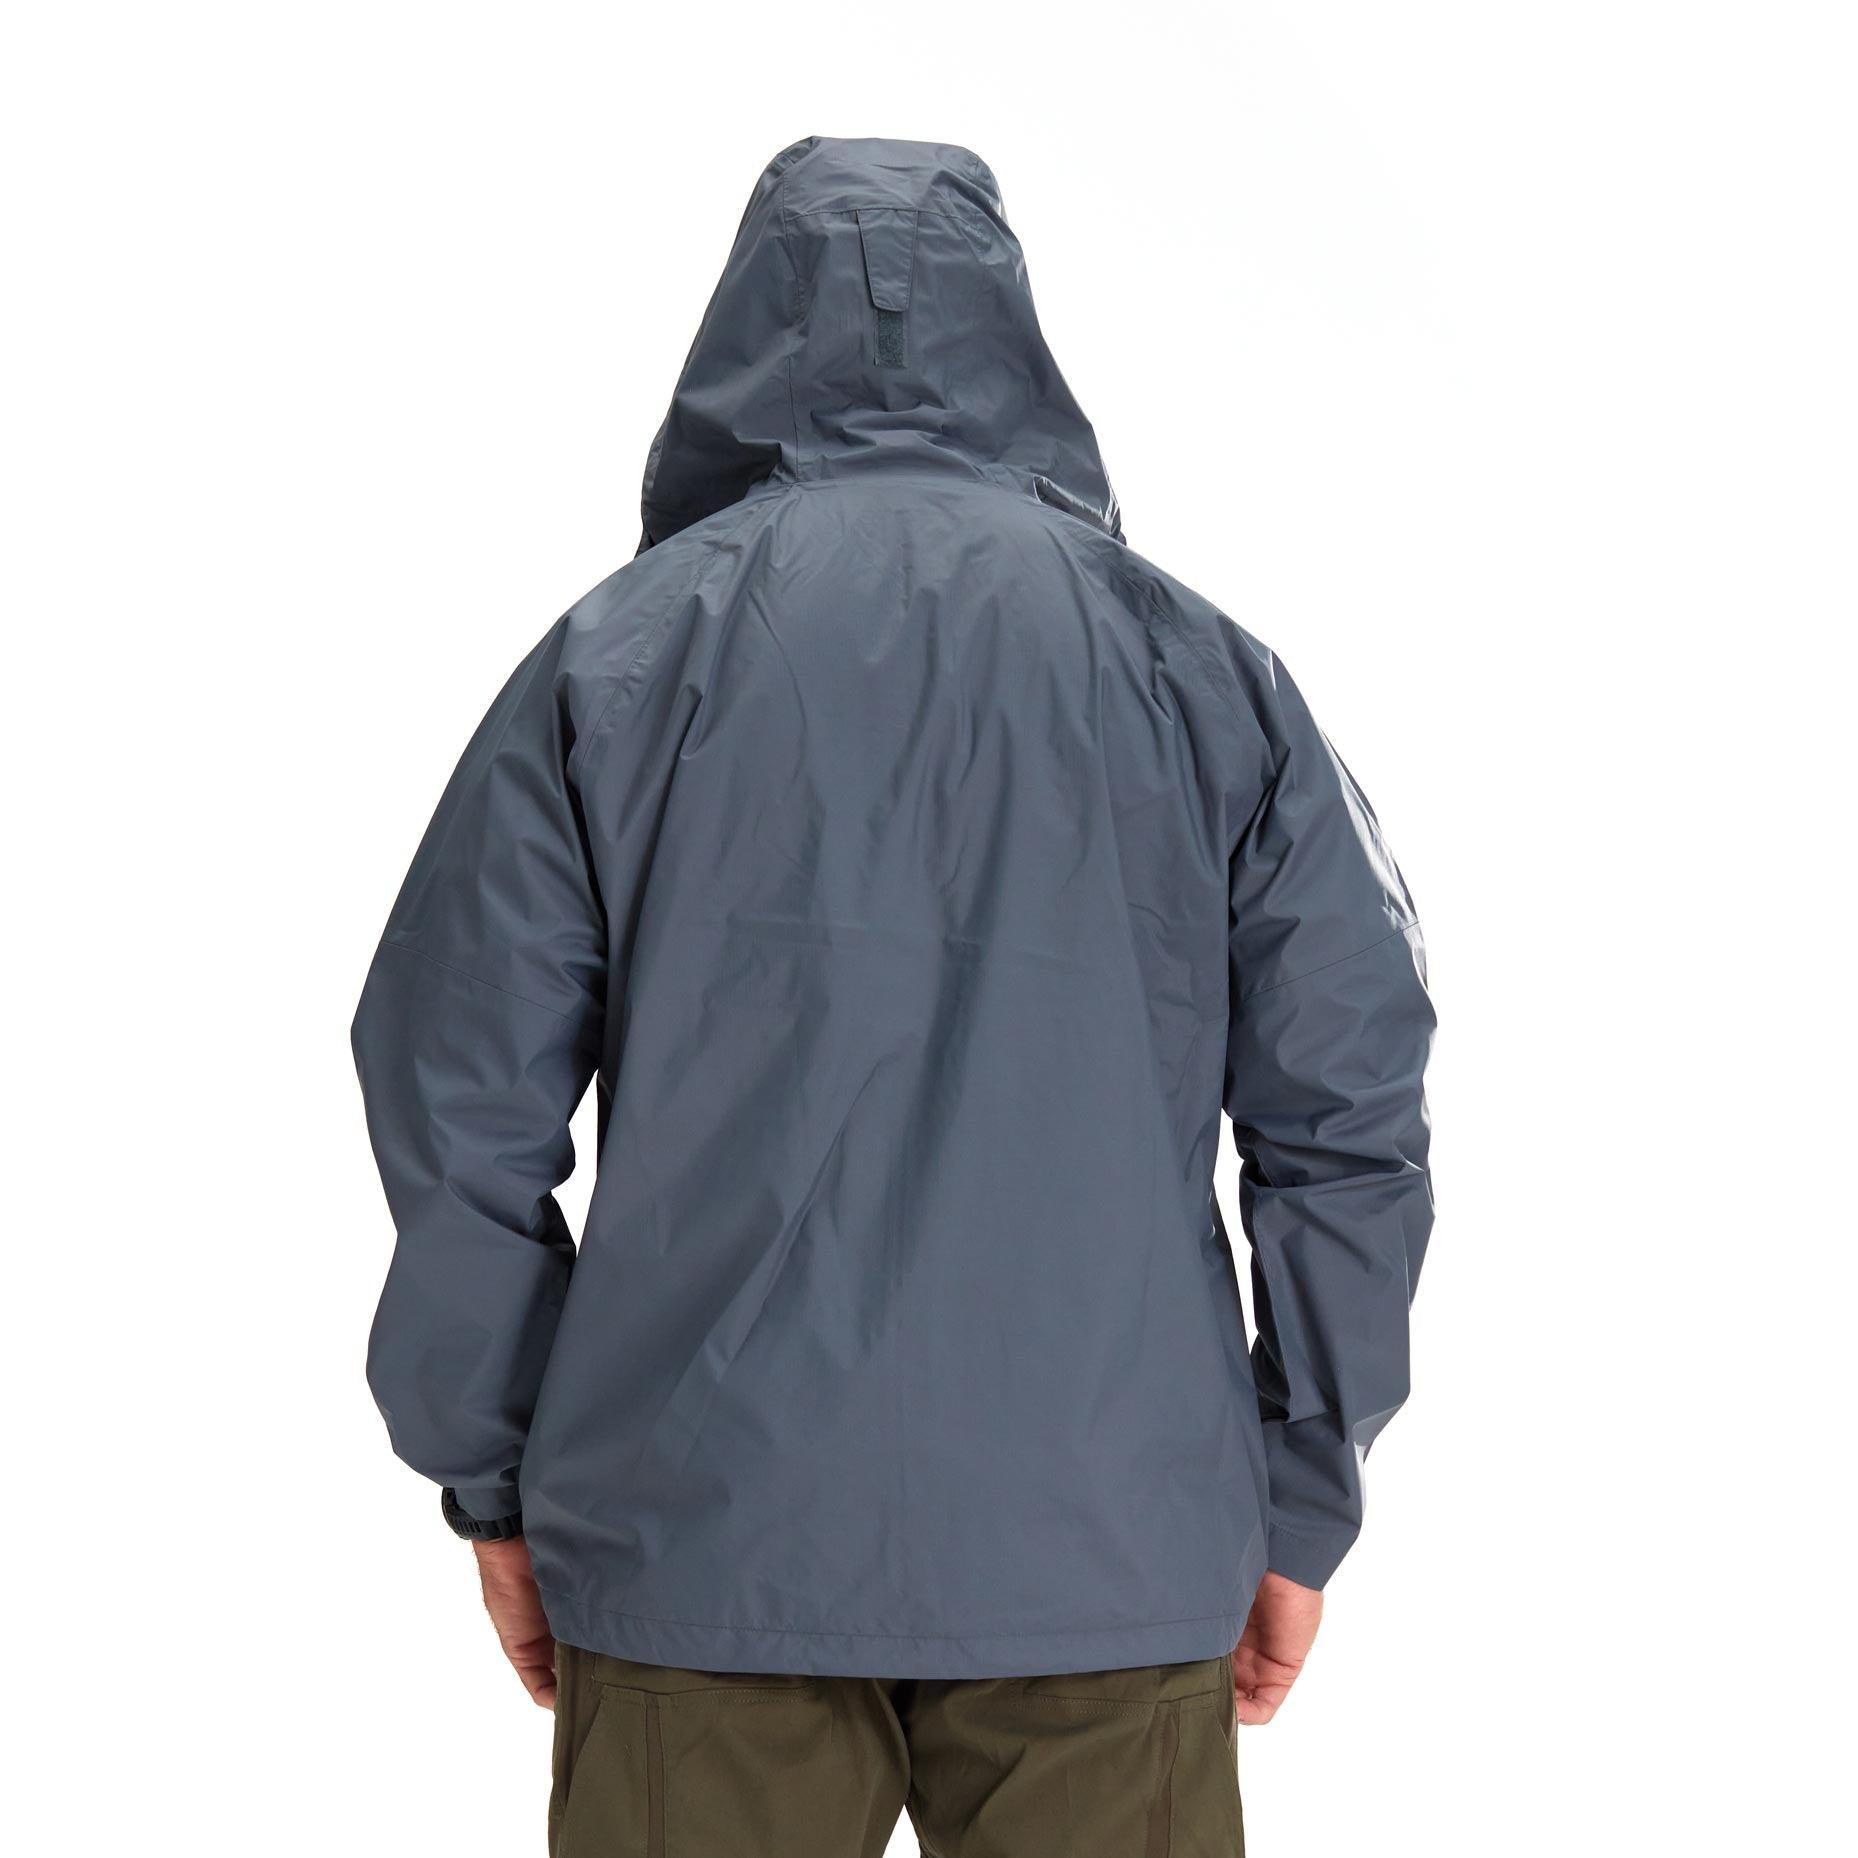 Trident Rain Jacket – Kryptek